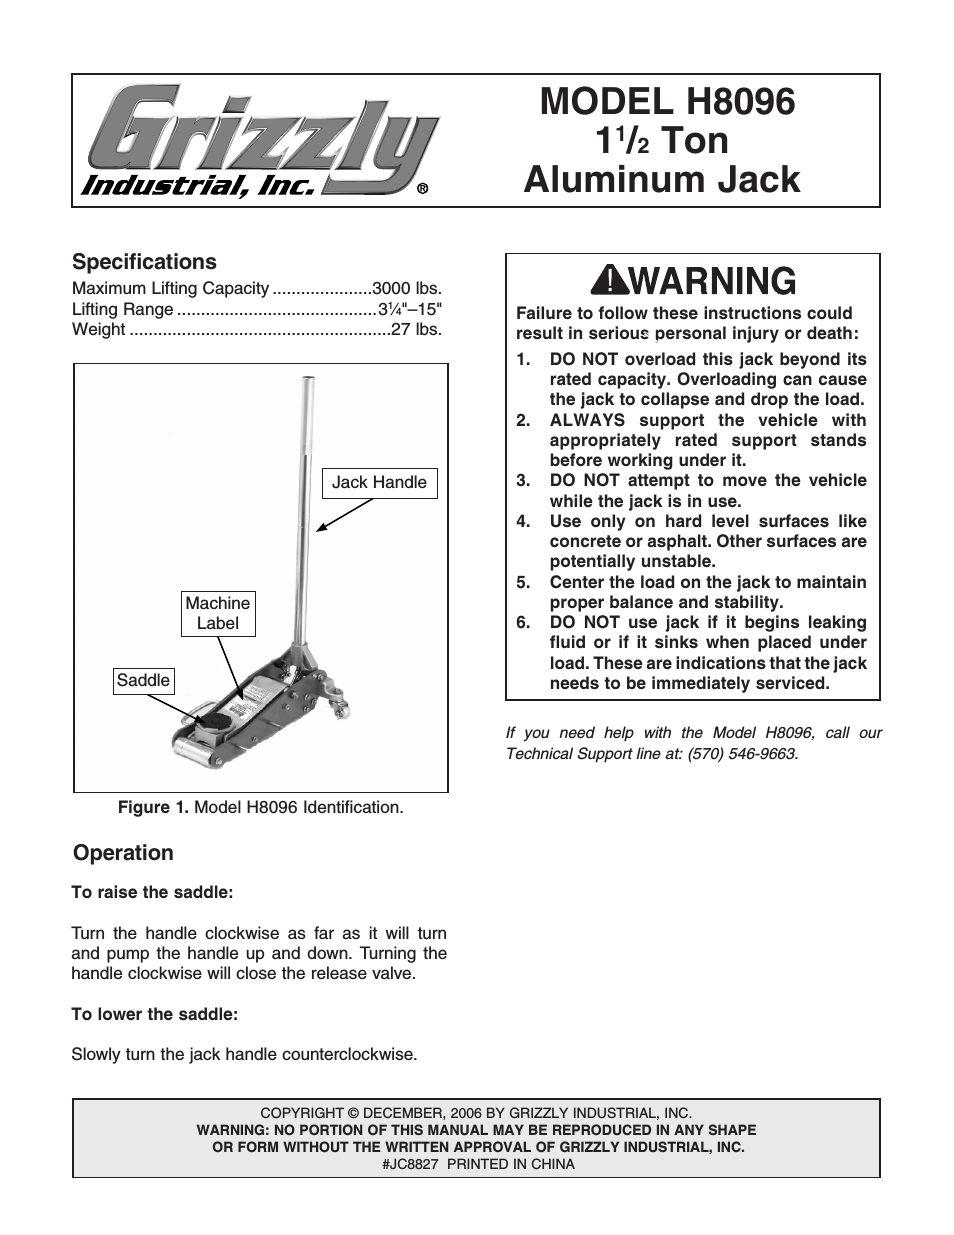 1 1/2 Ton Aluminum Jack H8096